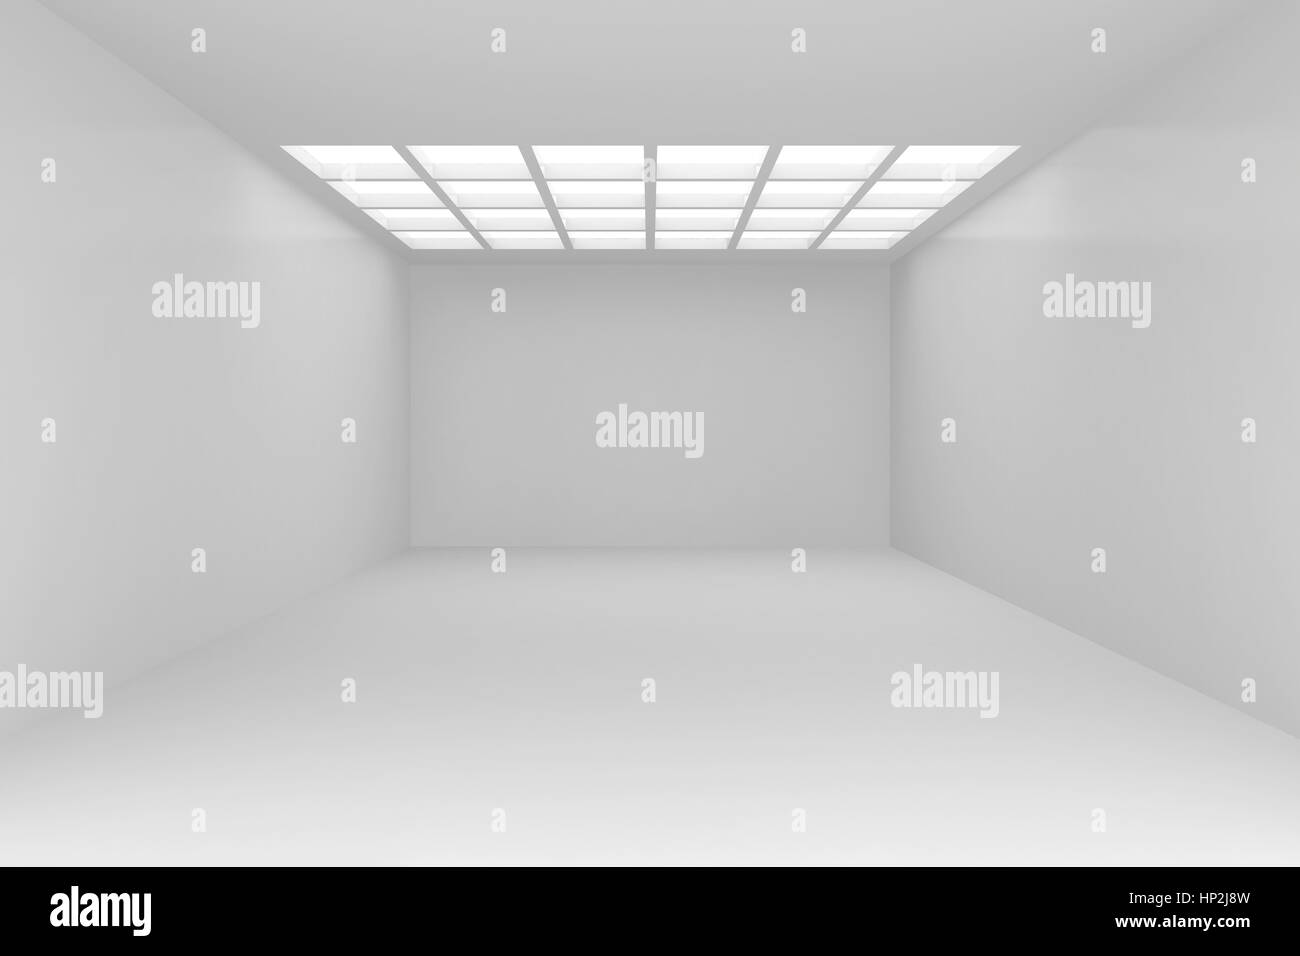 Intérieur avec mur blanc sur lequel tombe la lumière d'une fenêtre au plafond. Rendu 3d illustration d'arrière-plan Banque D'Images